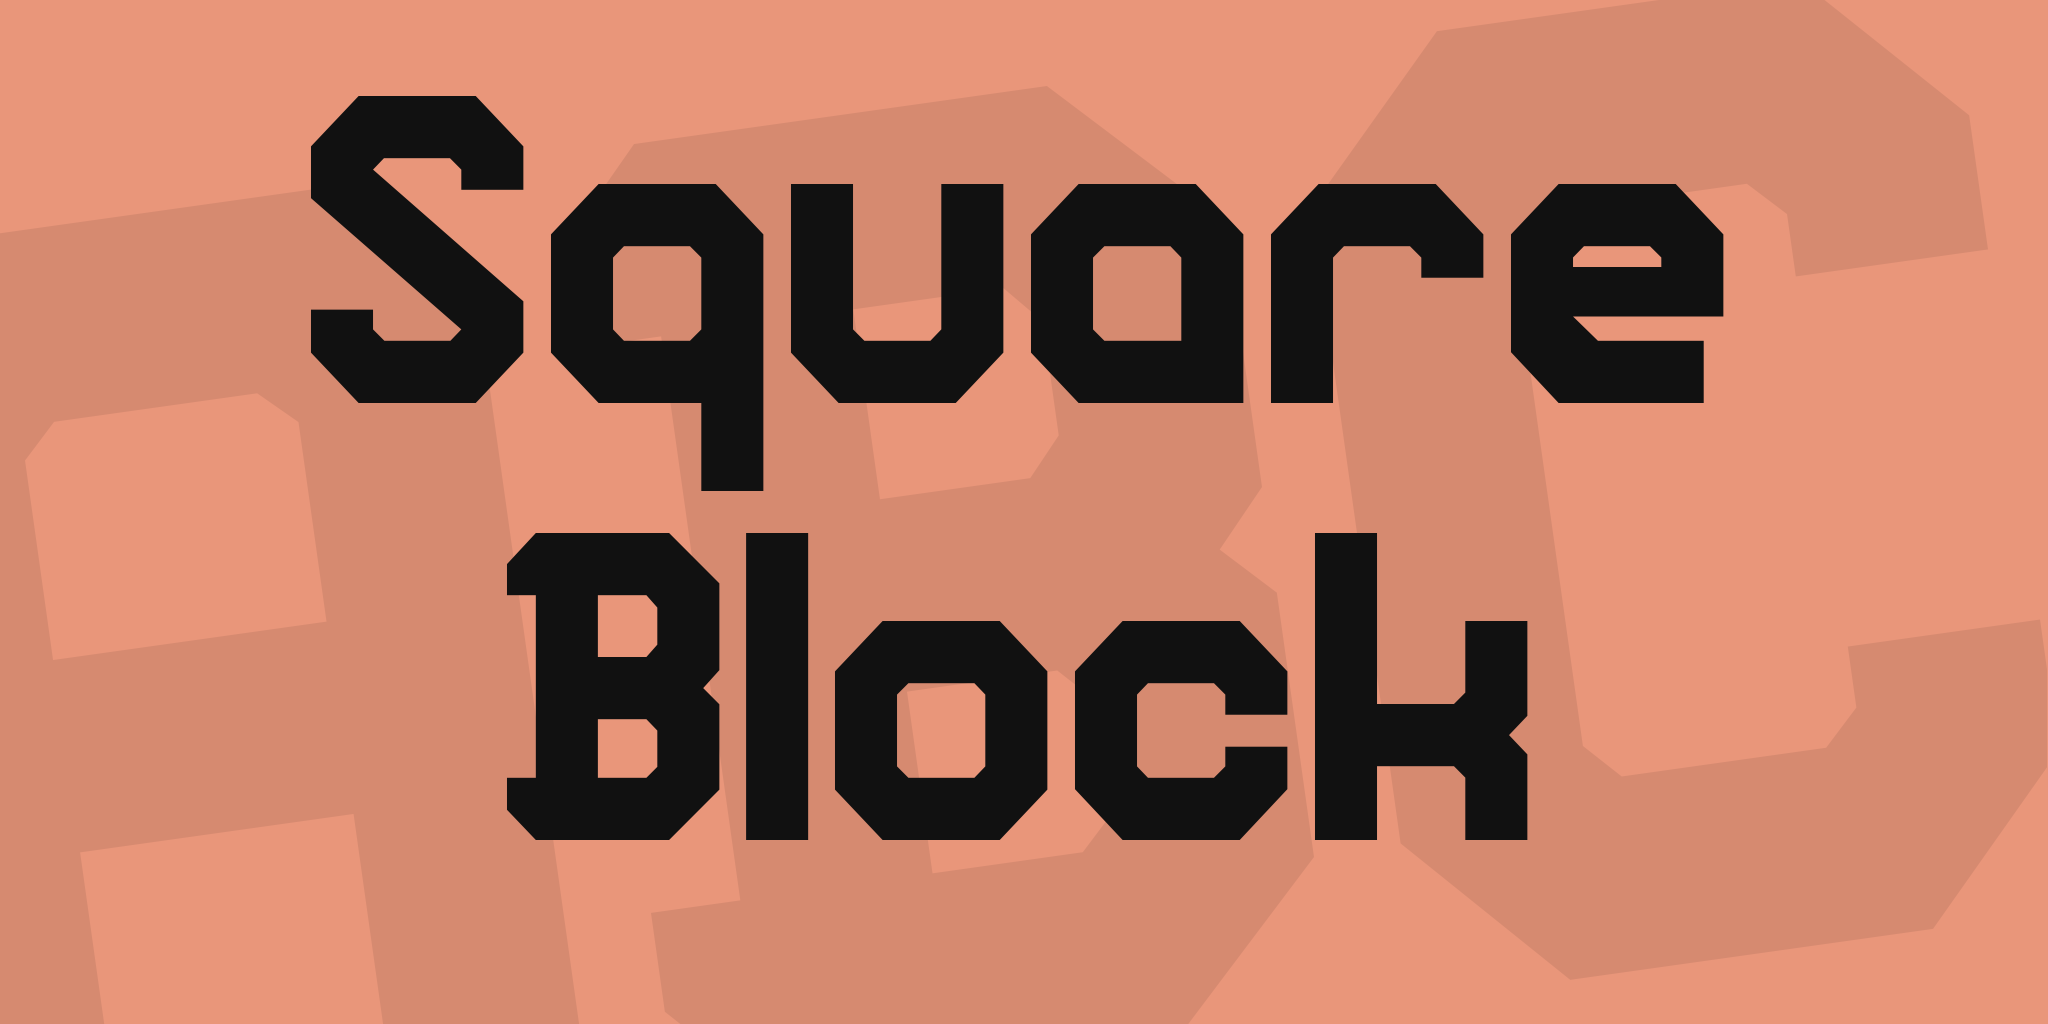 Square Block